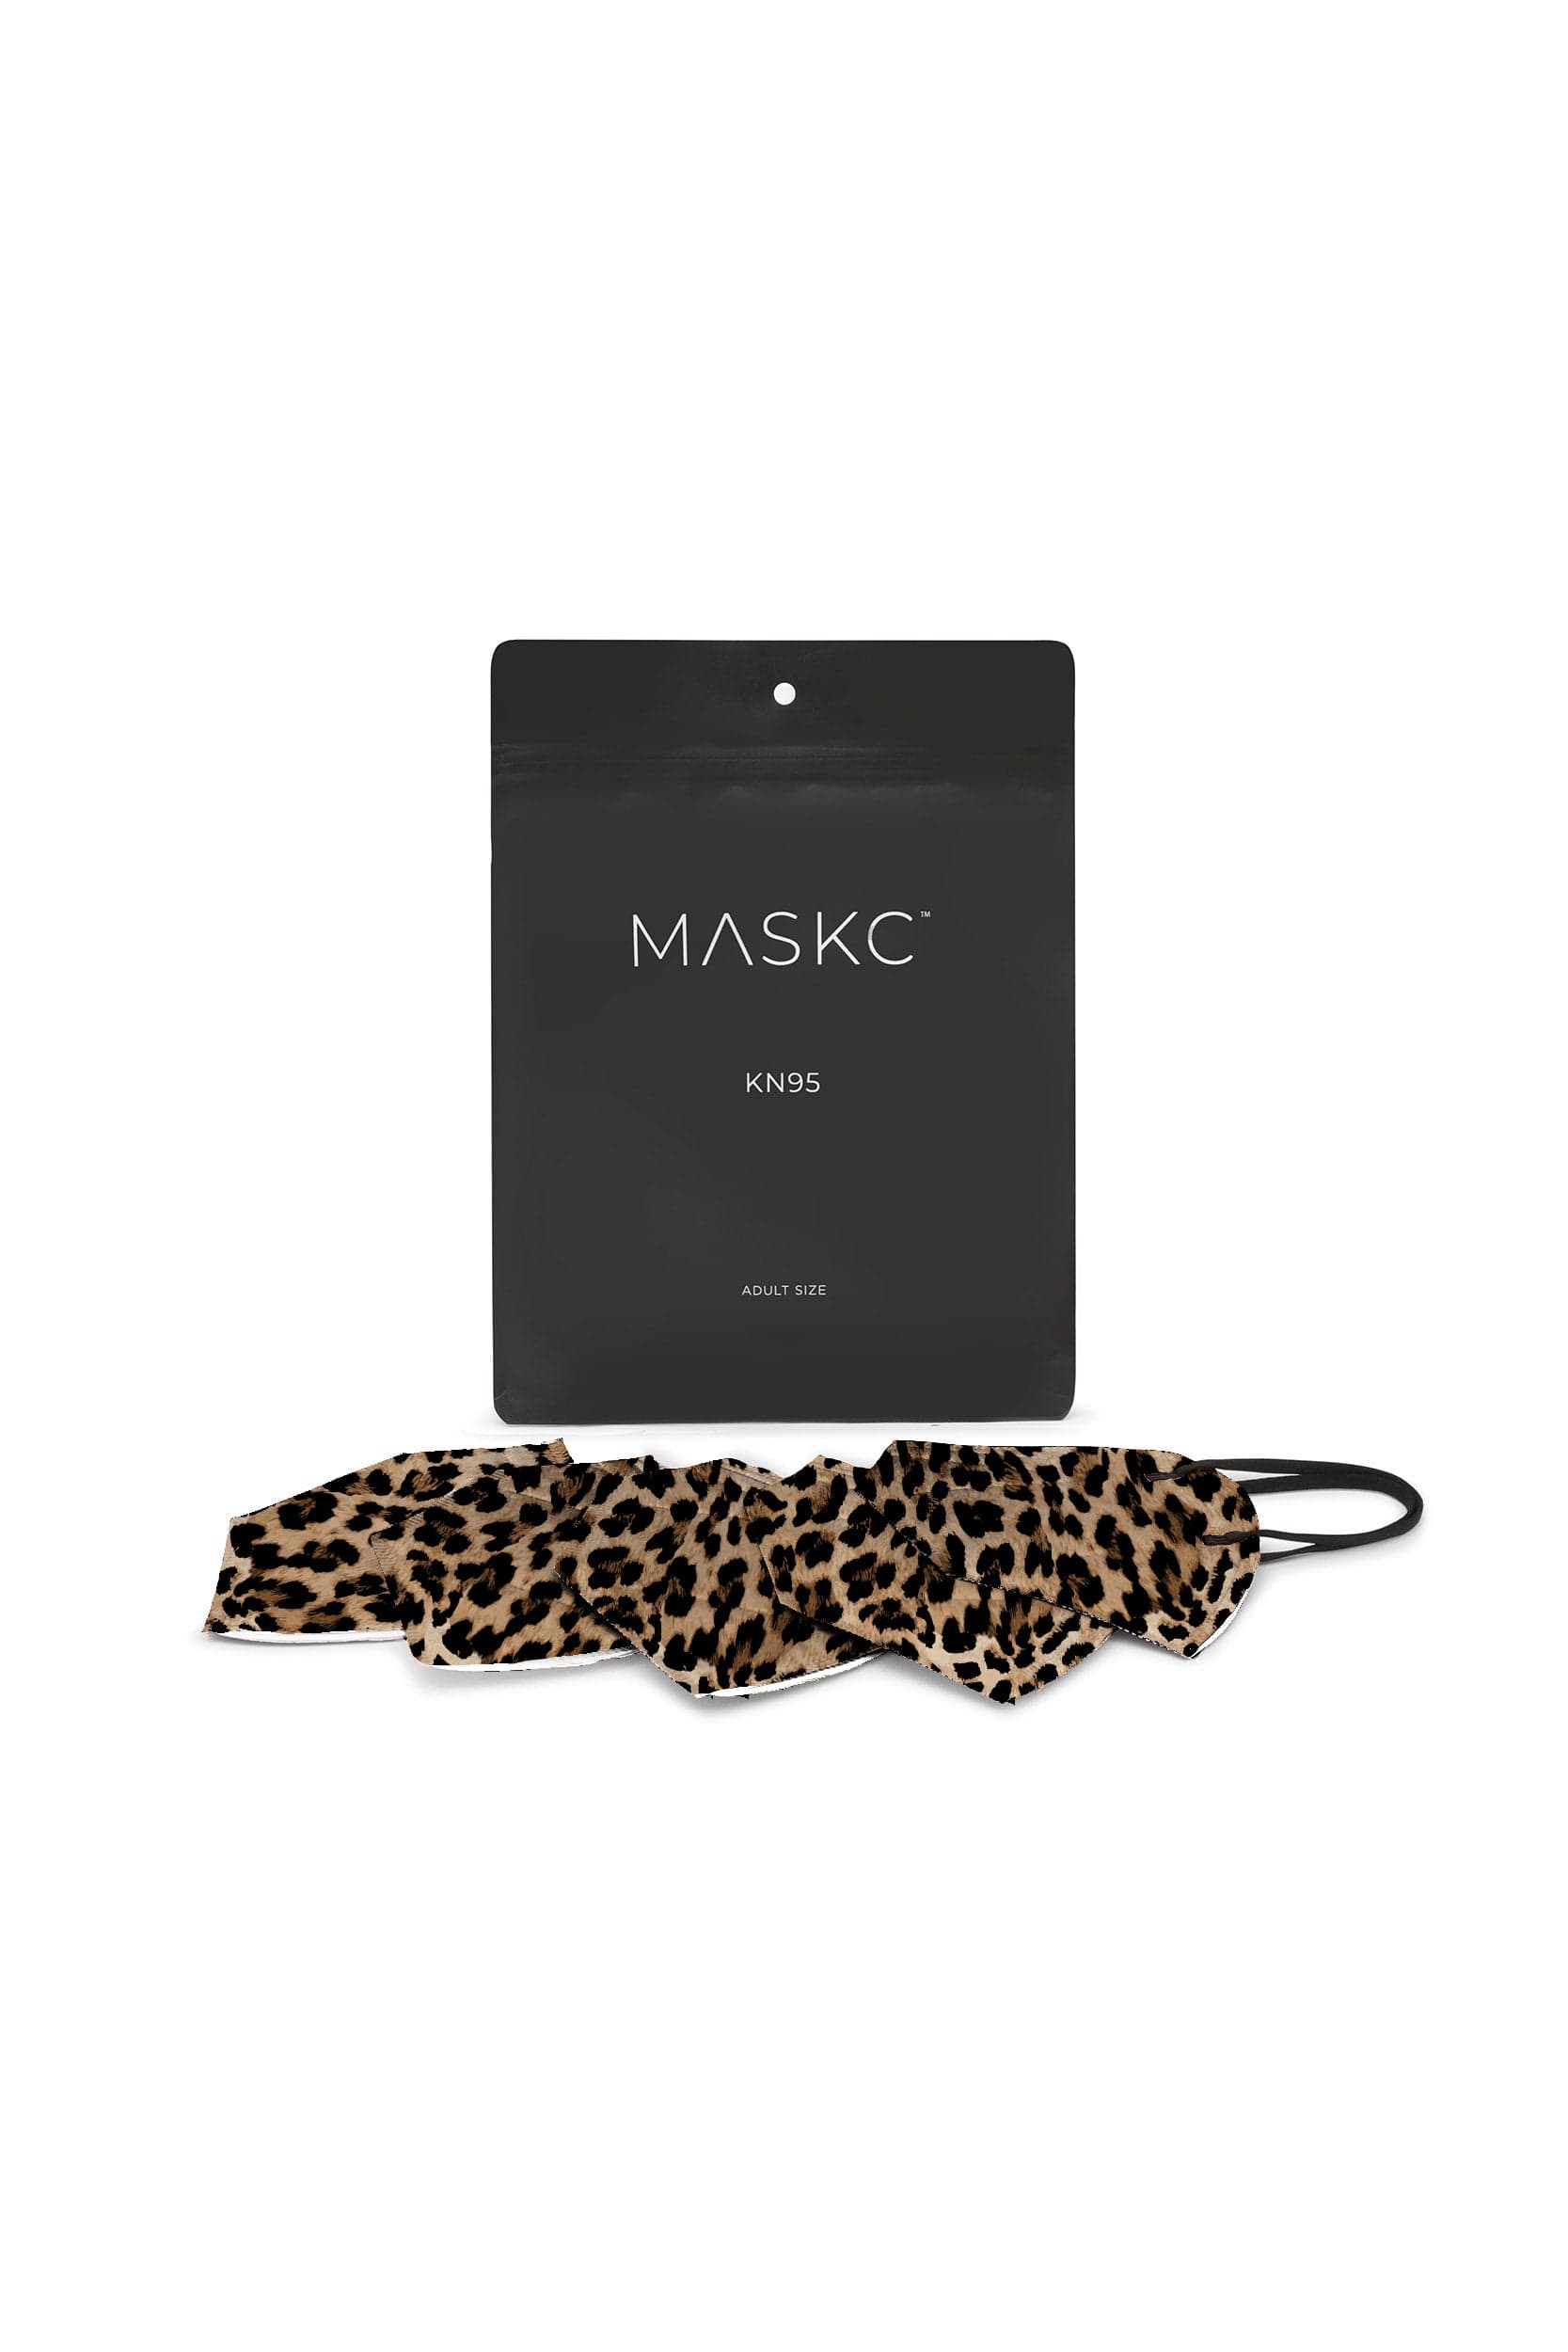 Leopard KN95 Face Masks - 10 Pack